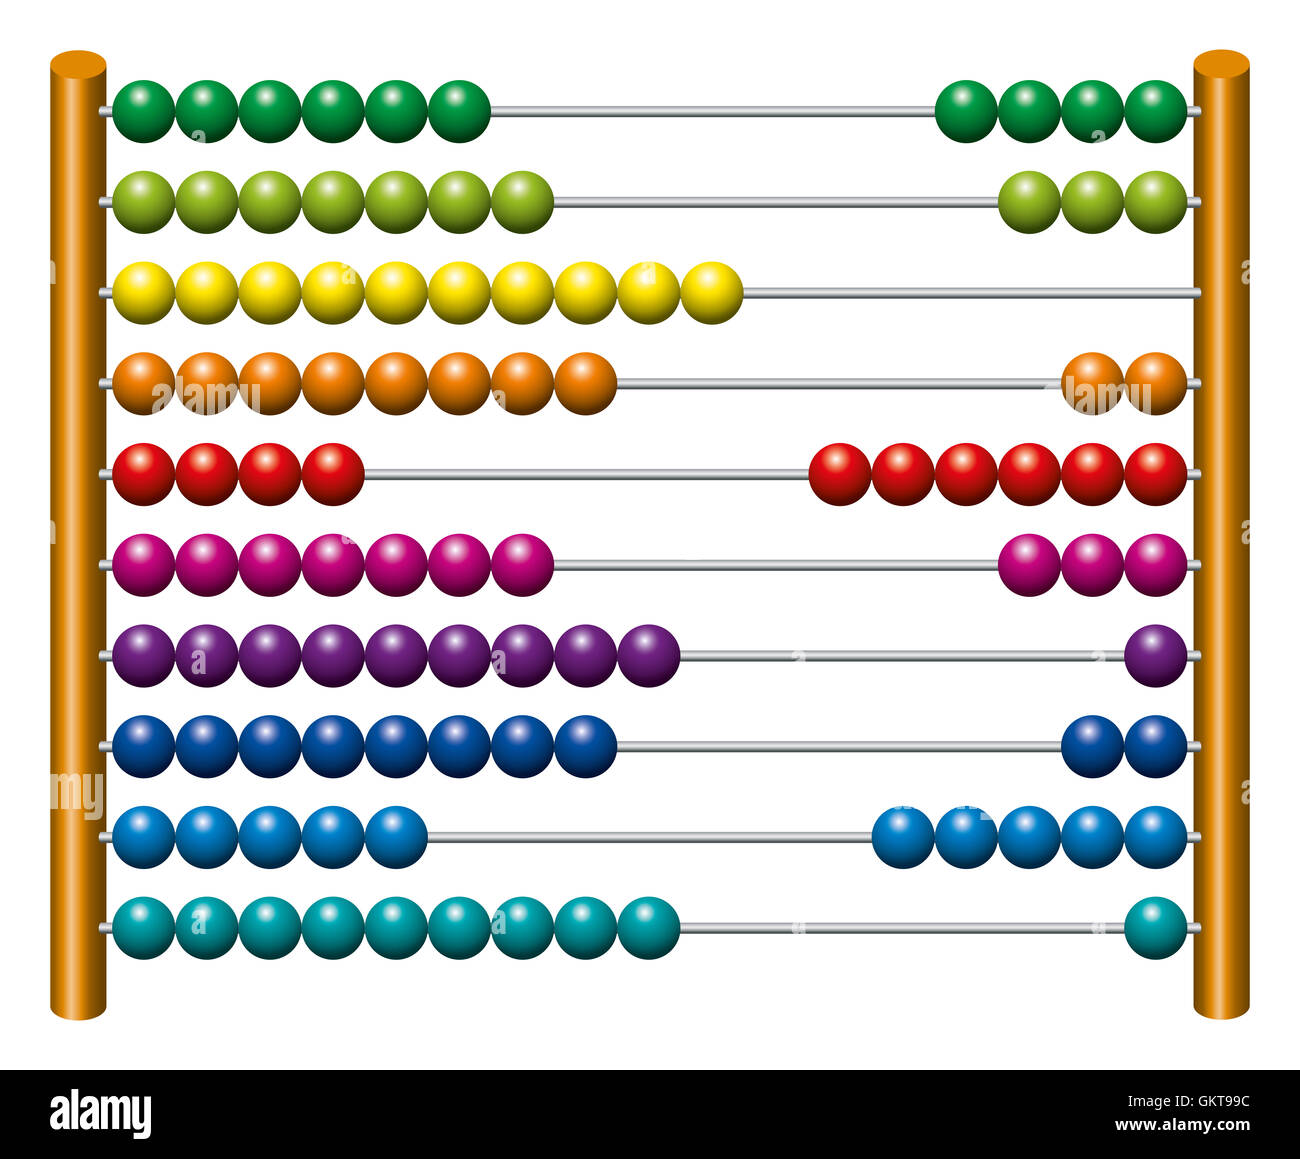 Unione abacus contando frame. Lo strumento di calcolo con arcobaleno perline colorate scorrere sui fili. Foto Stock